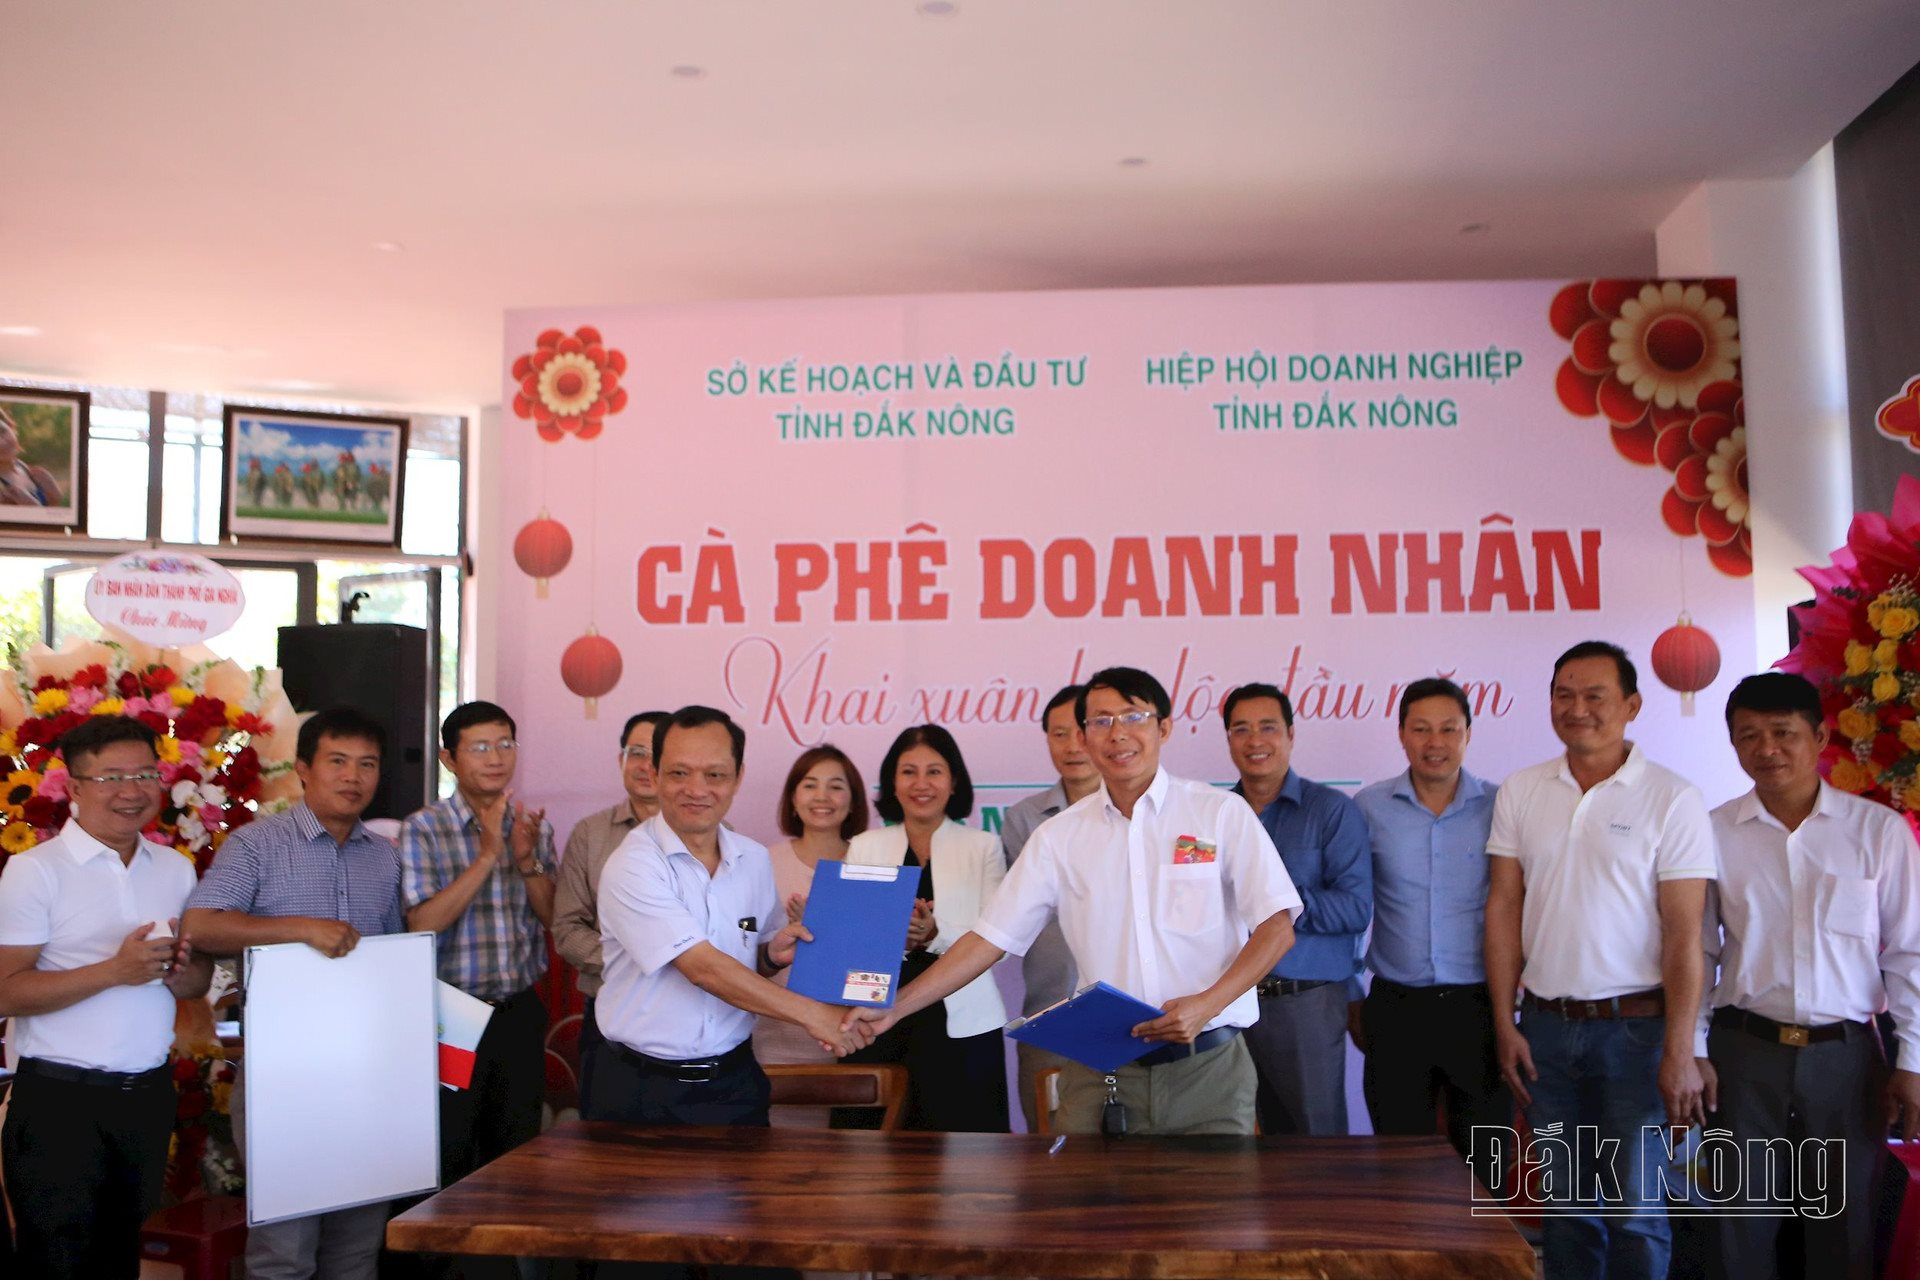 Doanh nghiệp TP. Hồ Chí Minh ký kết ghi nhớ hợp tác đầu tư với doanh nghiệp Đắk Nông